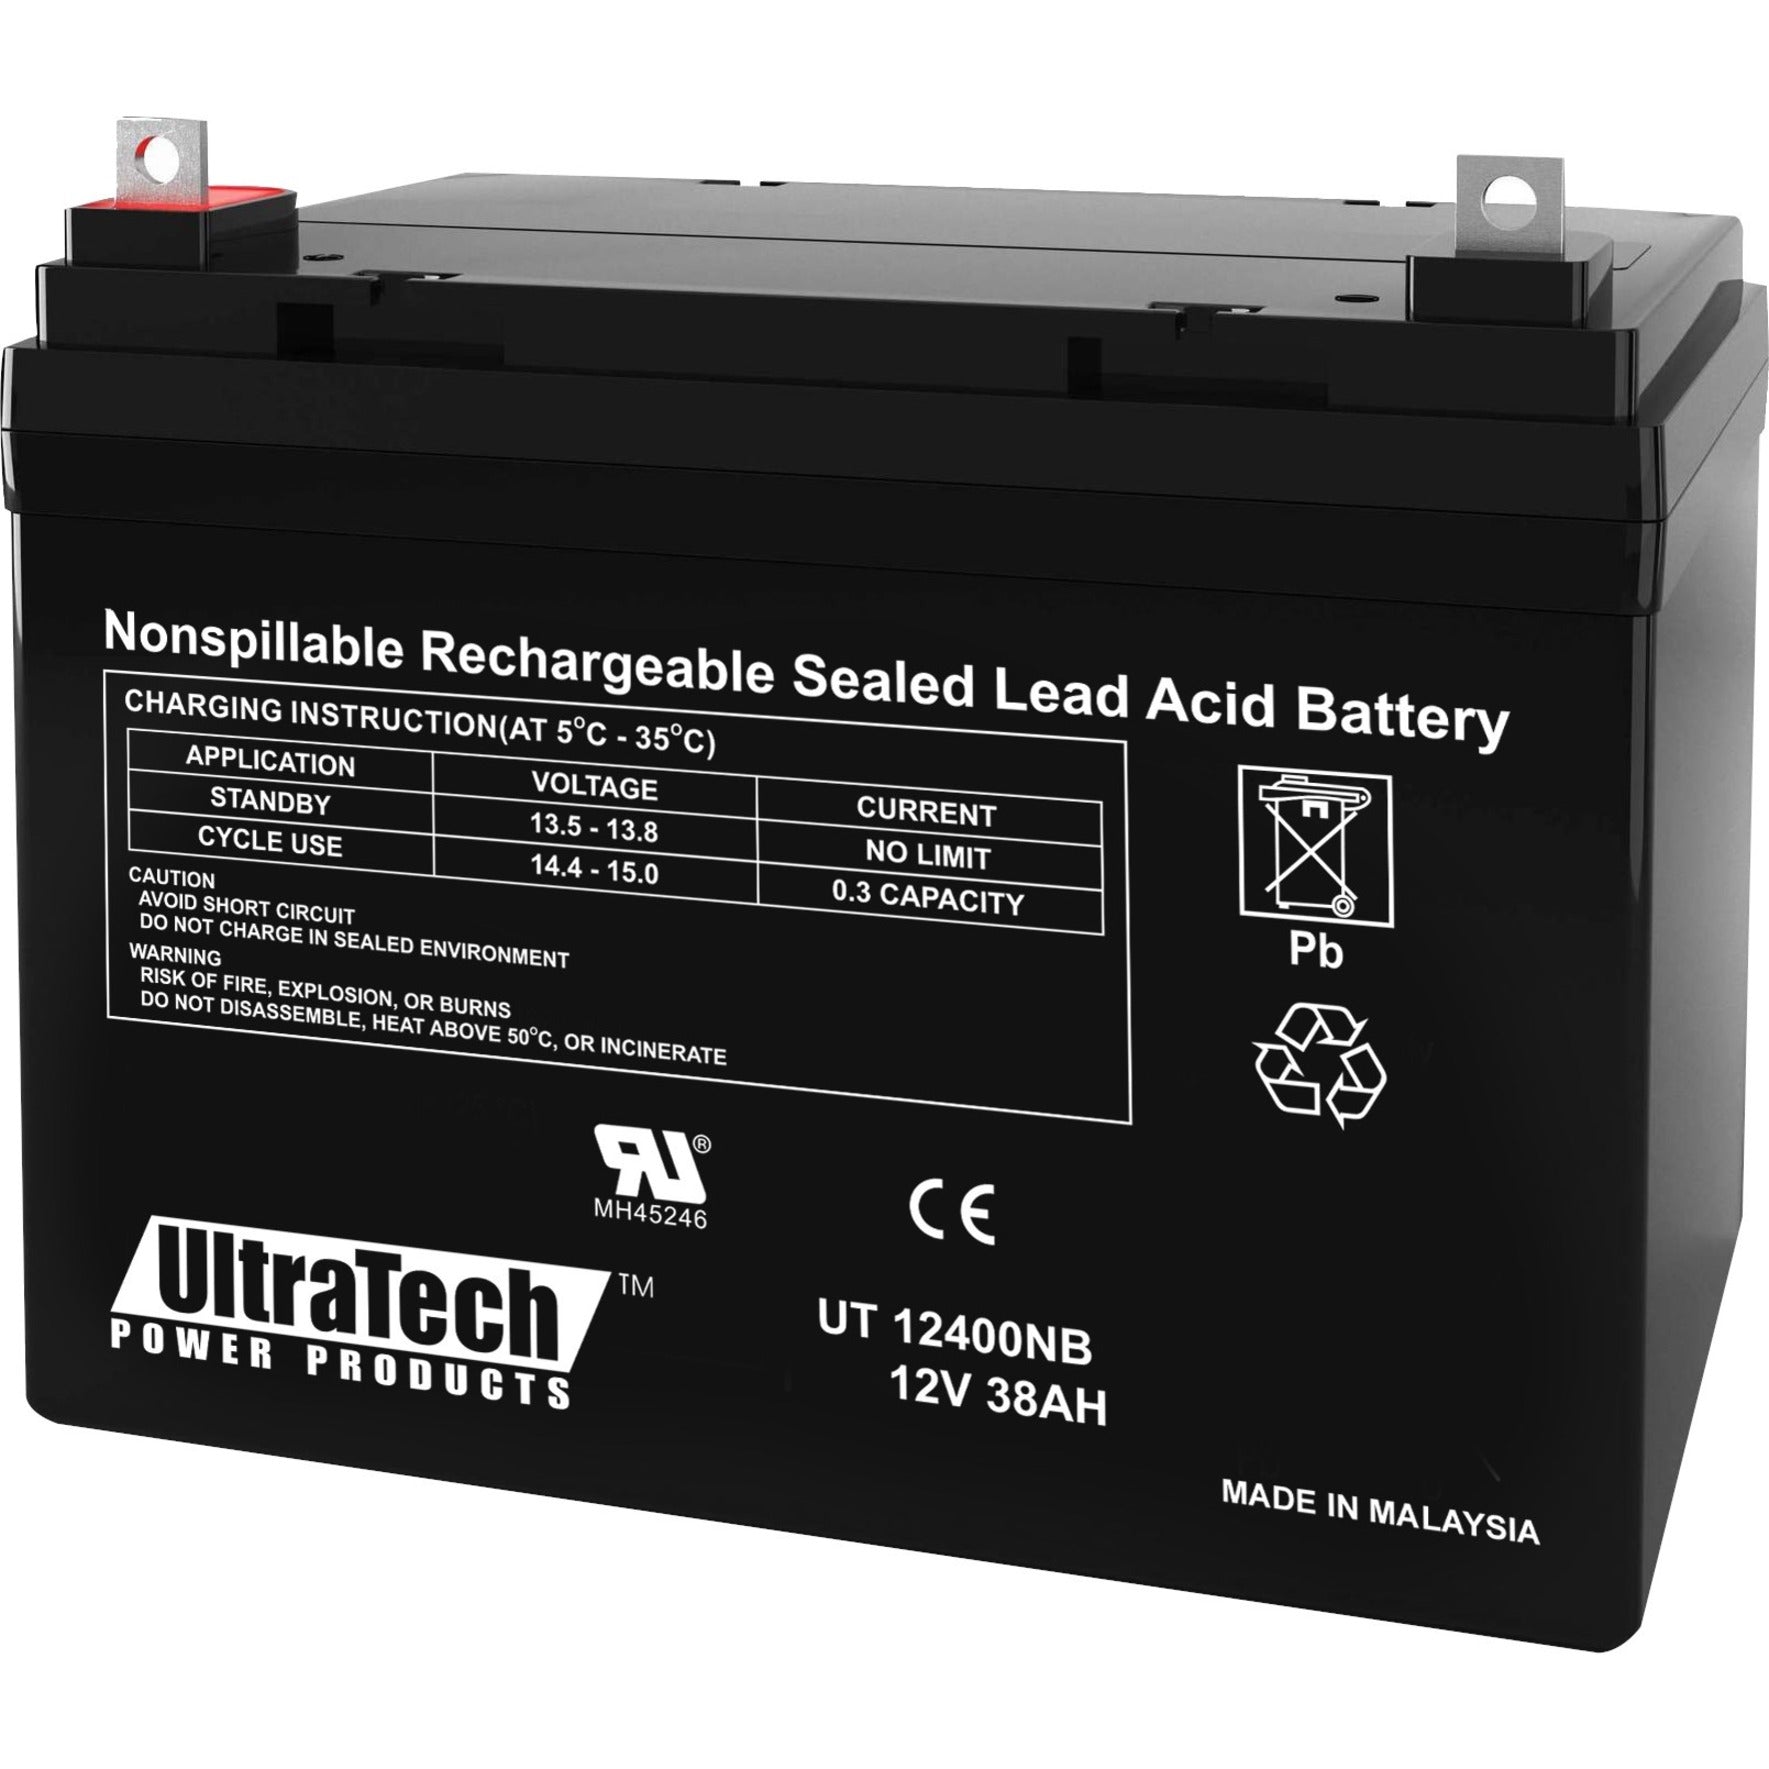 Ultratech IM-12400NB Battery, 12V DC, 40000mAh, Lead Acid, 1 Year Warranty